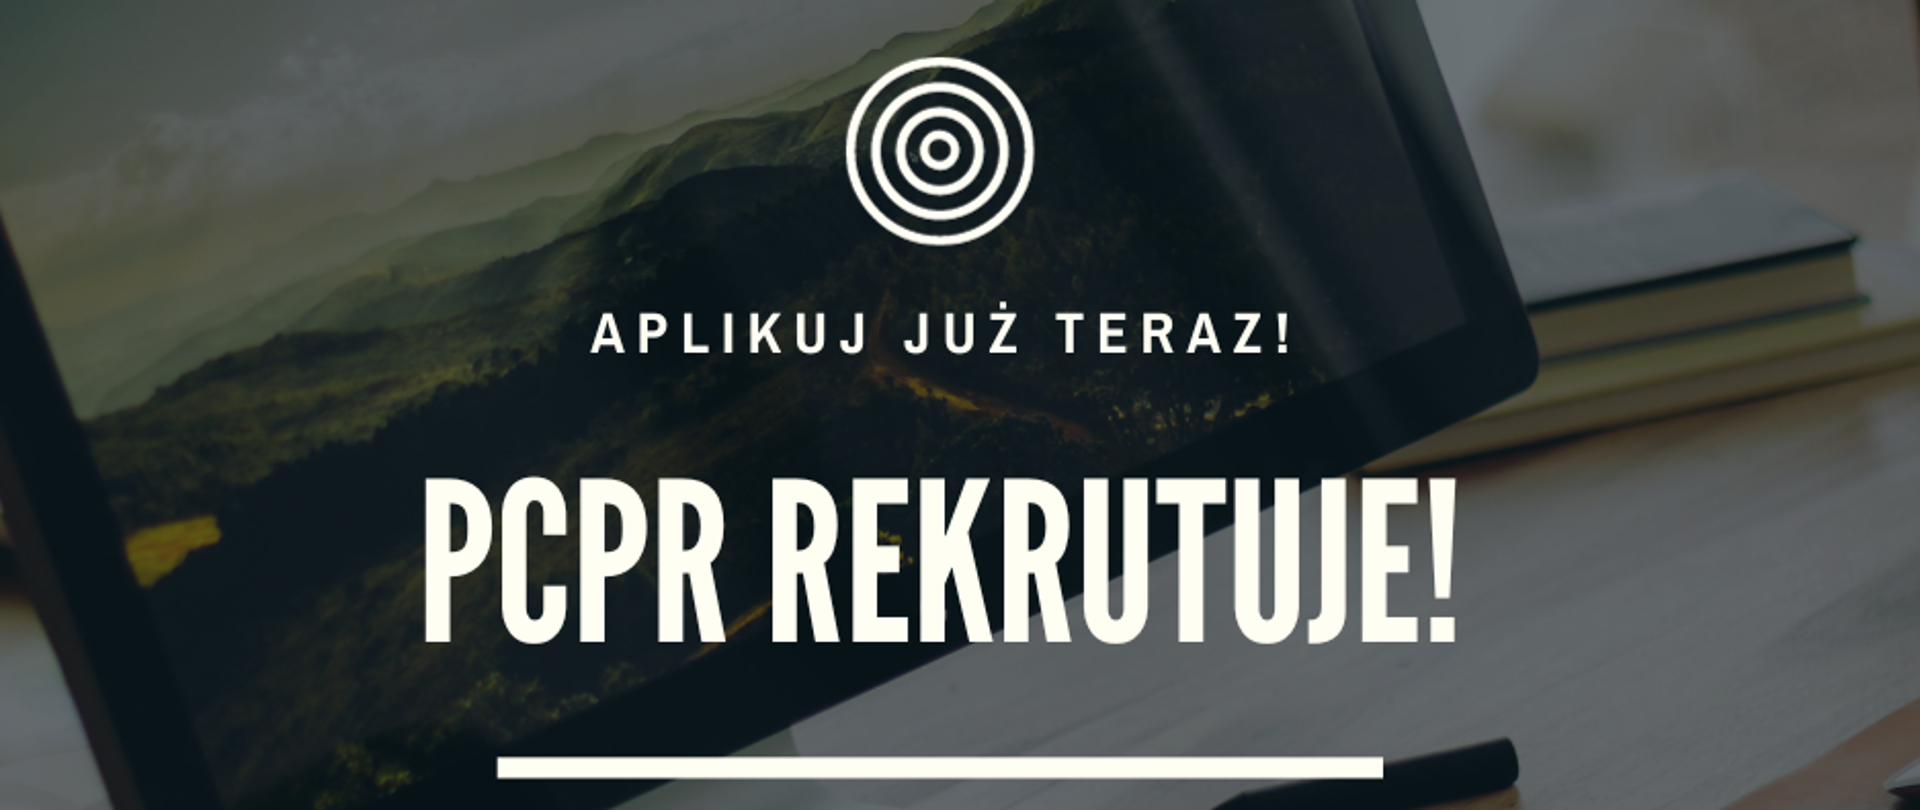 PCPR rekrutuje